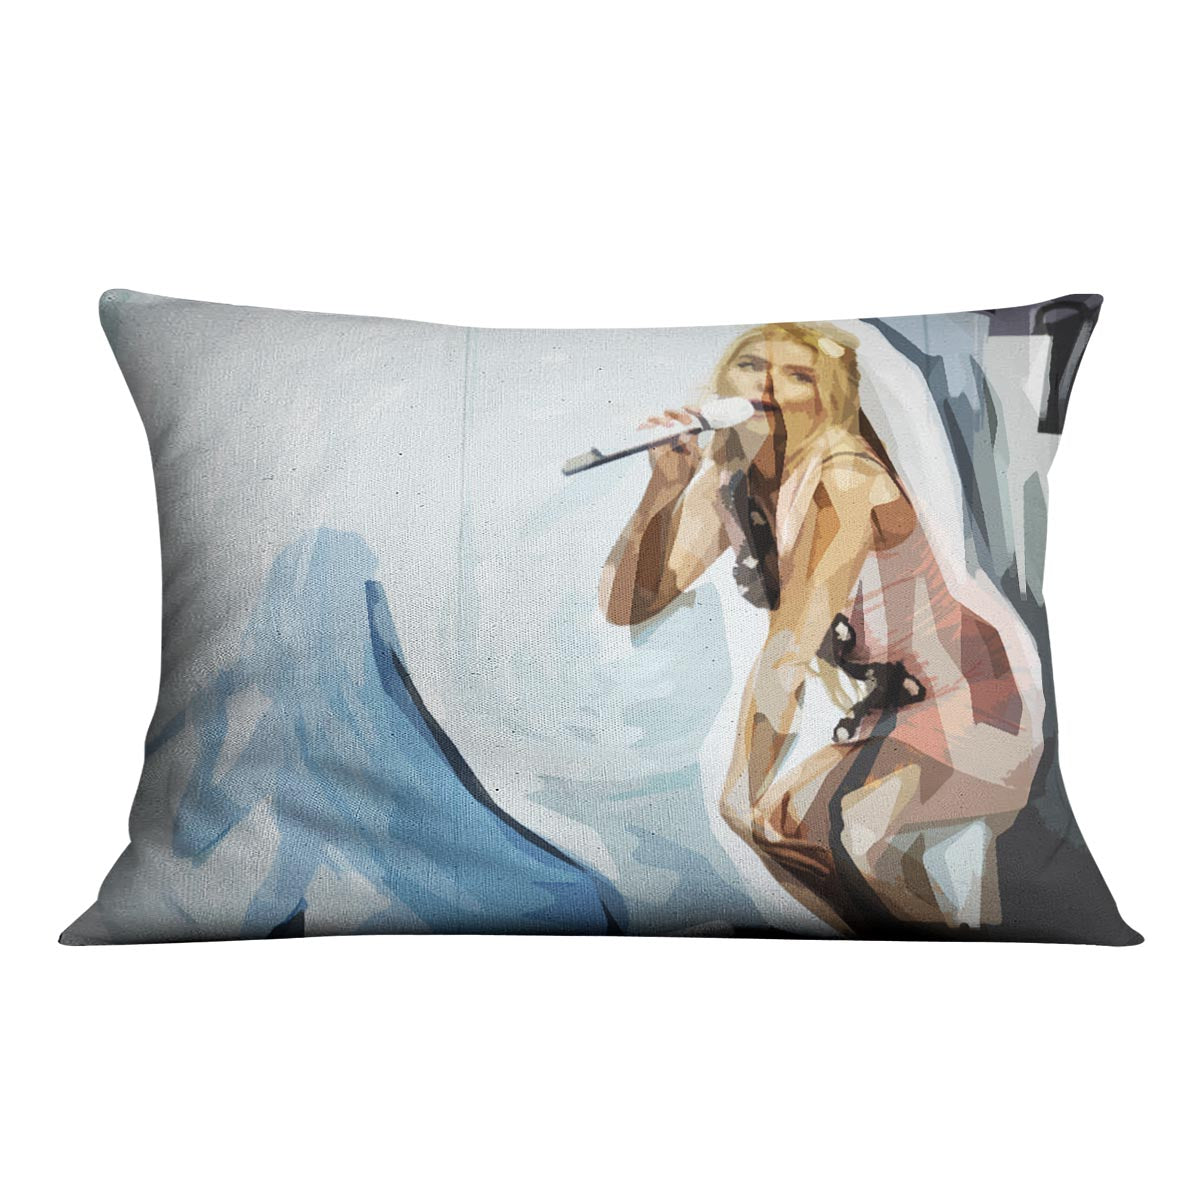 Paloma Faith Pop Art Cushion